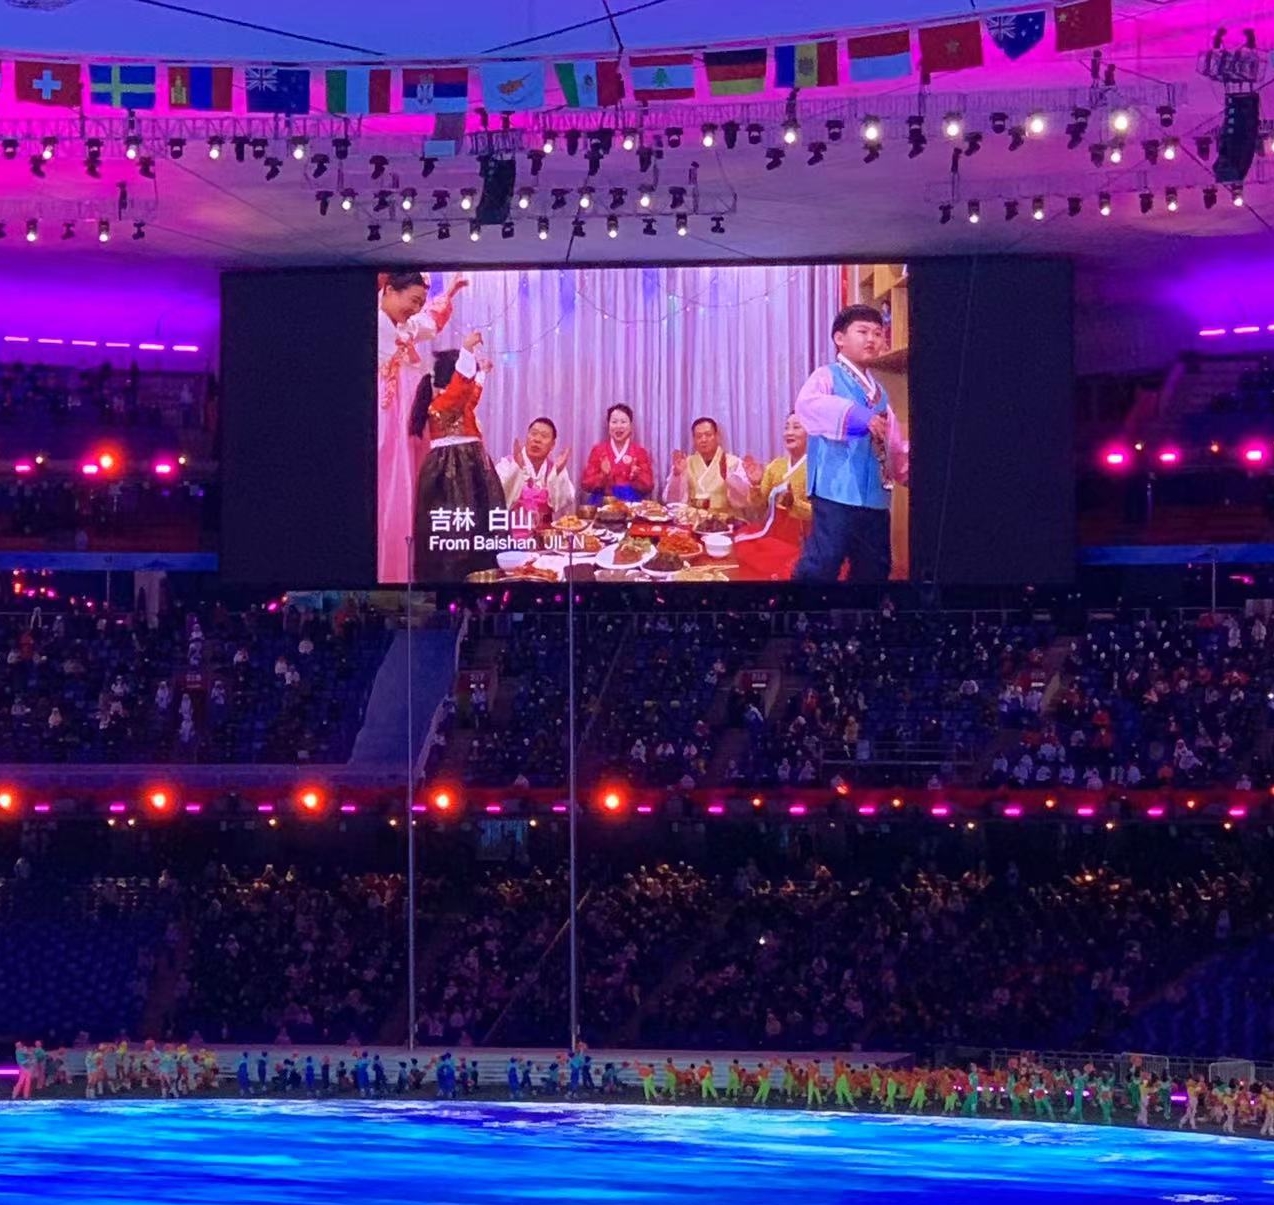 4일 중국 베이징 국가체육장에서 열린 2022 베이징동계올림픽 개회식에서 조선족들이 설 차례상을 나눠 먹는 장면이 대형 화면을 통해 방영되고 있다. 베이징 류지영 특파원